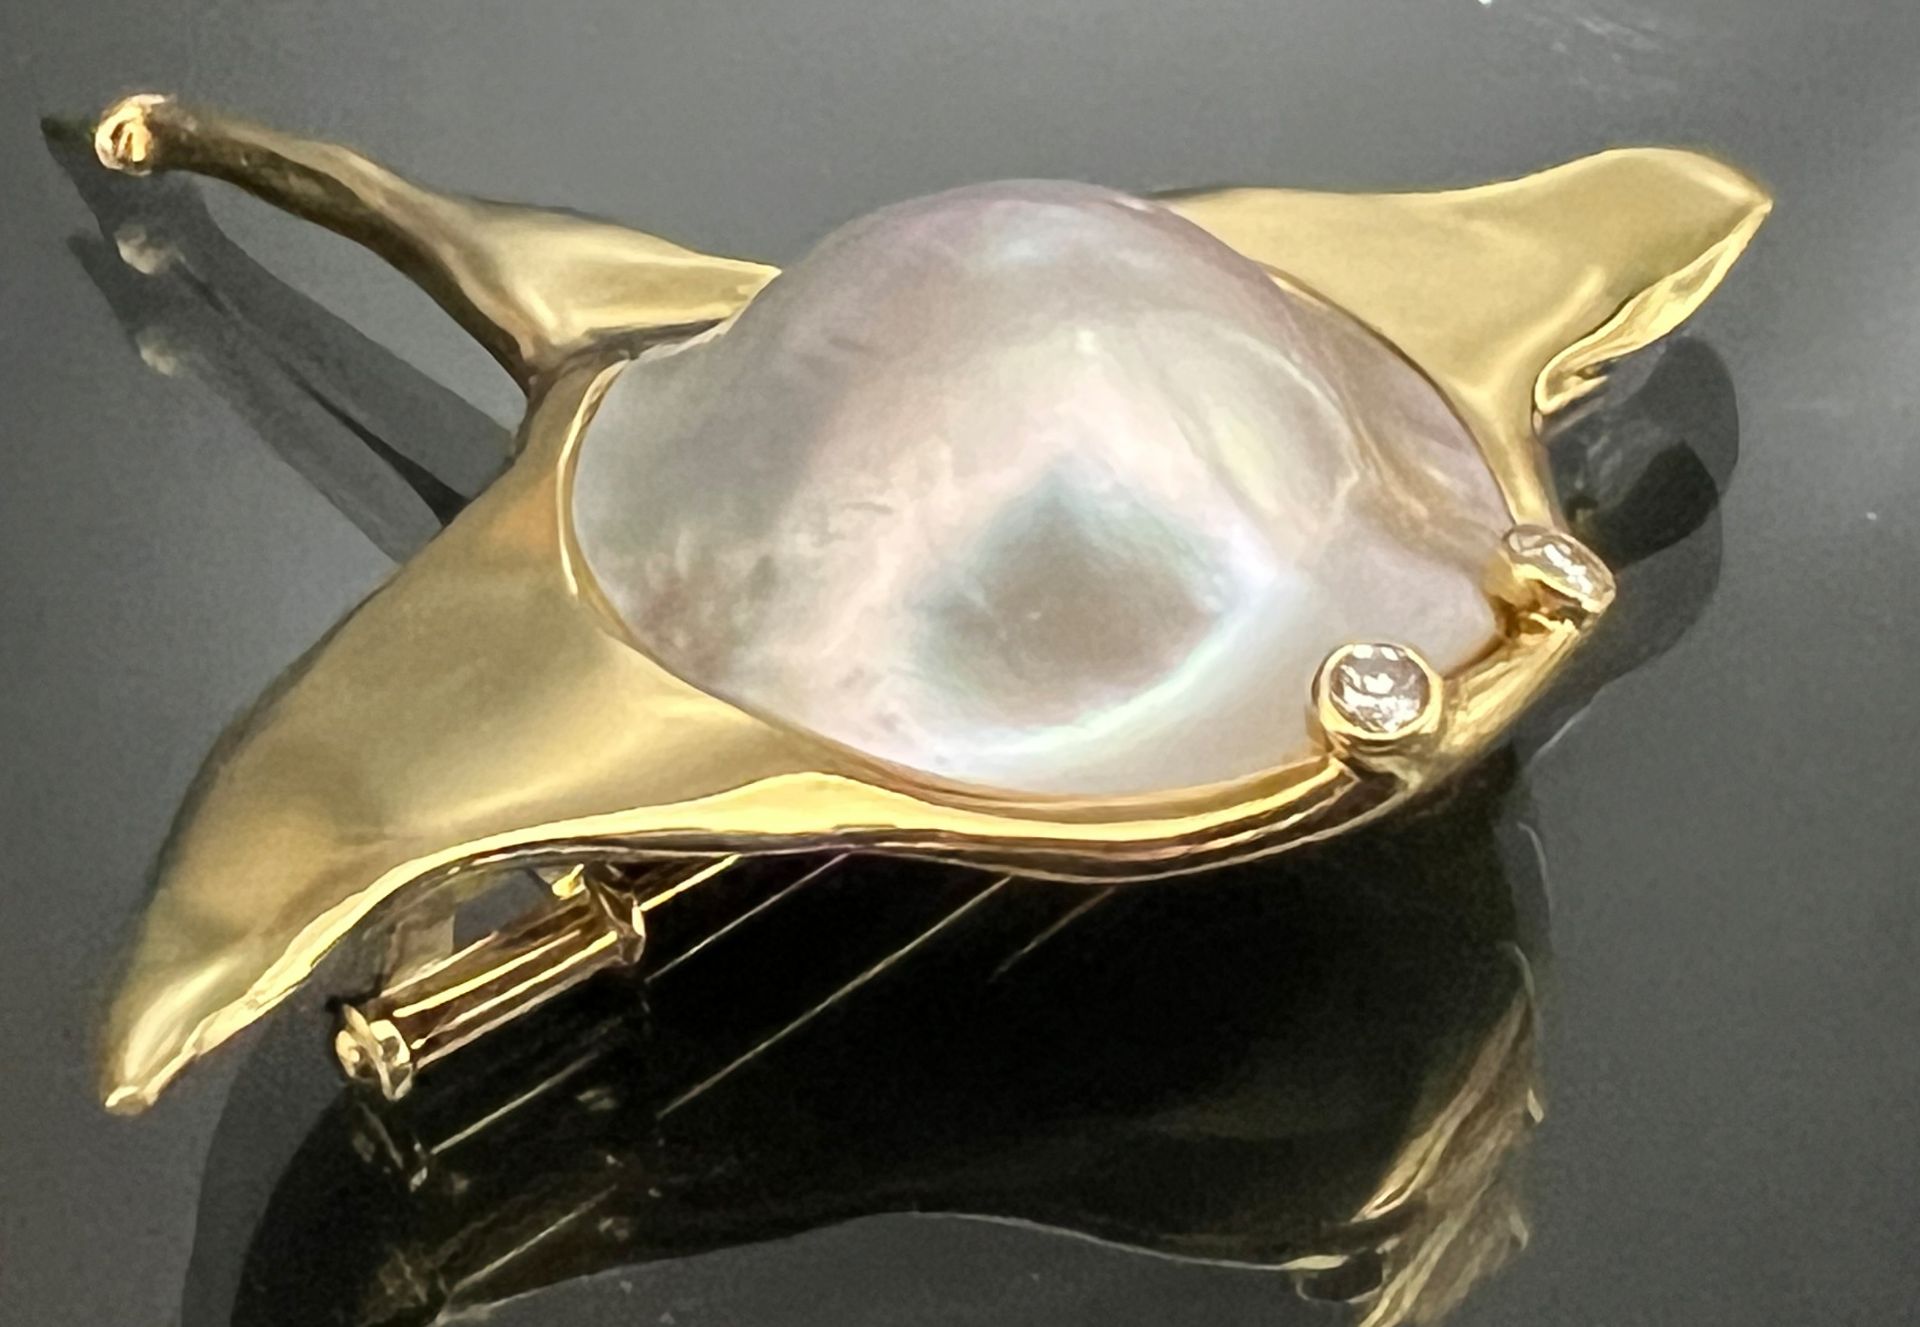 Brosche "Rochen" von Juwelier STREBEL. 750 Gelbgold mit einer halben Perle und 2 kleinen Diamanten - Bild 2 aus 6